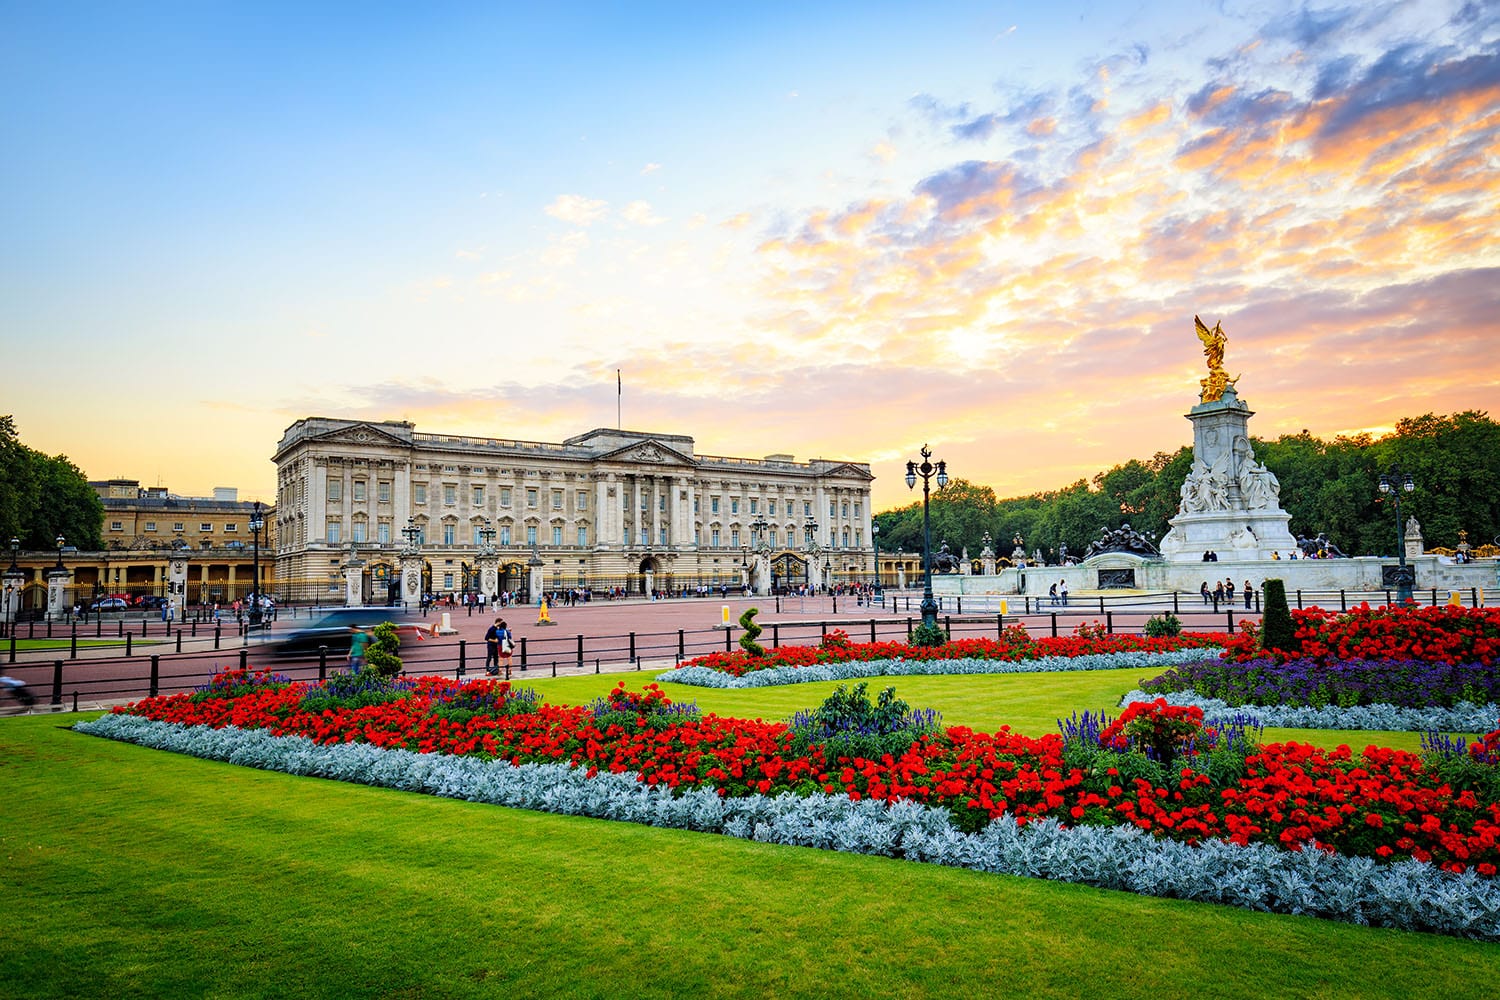 Visiter Londres en 3 jours - Buckingham Palace